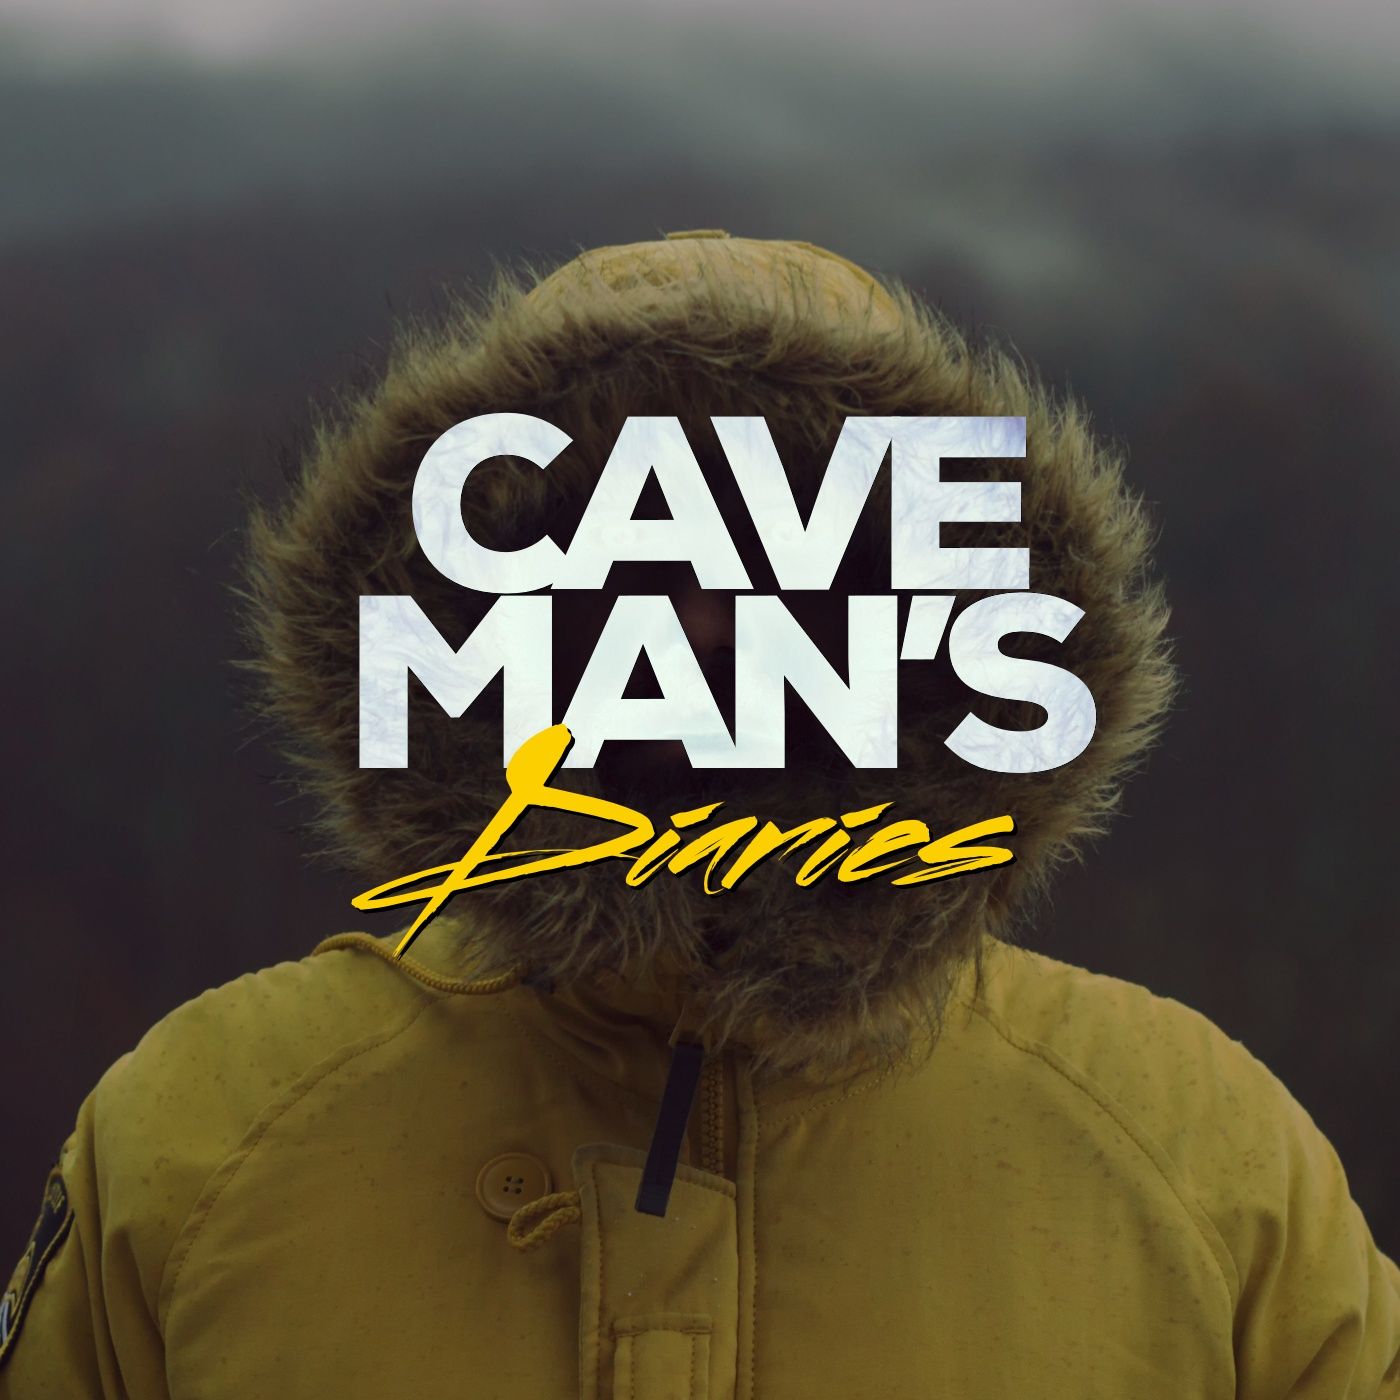 Caveman’s Diaries